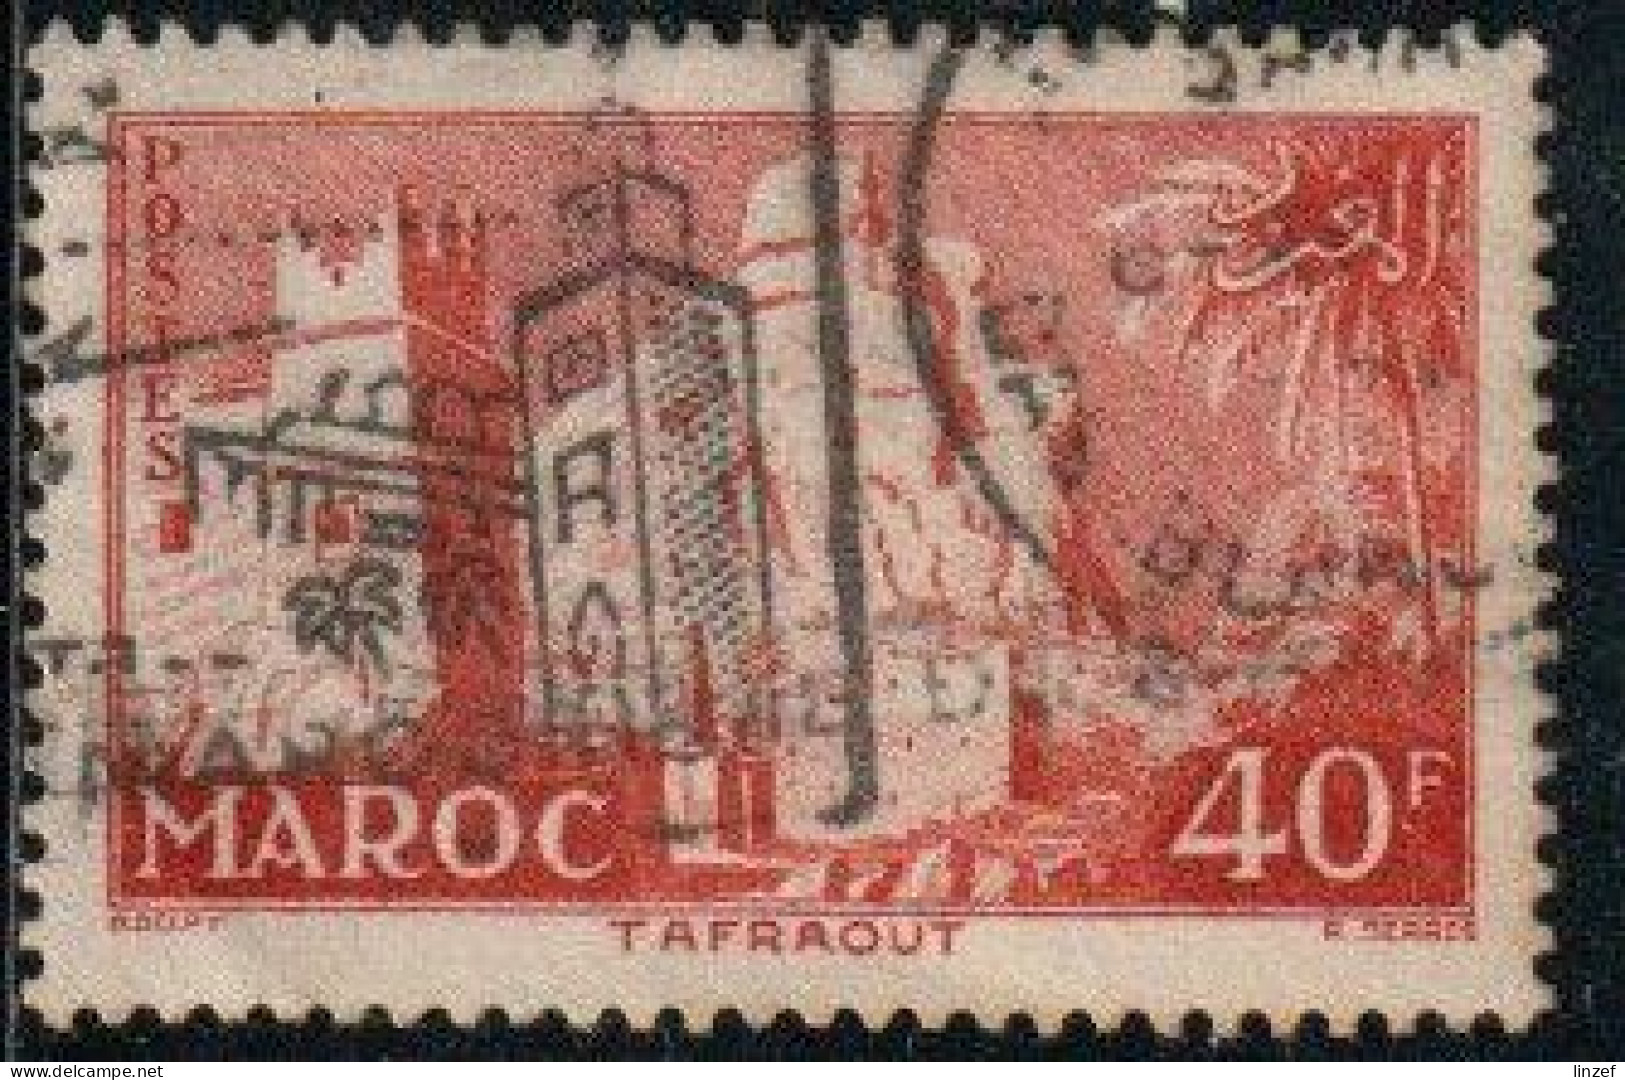 Maroc 1955 Yv. N°359 - 40f Rouge-brun Tafraout - Oblitéré - Usados